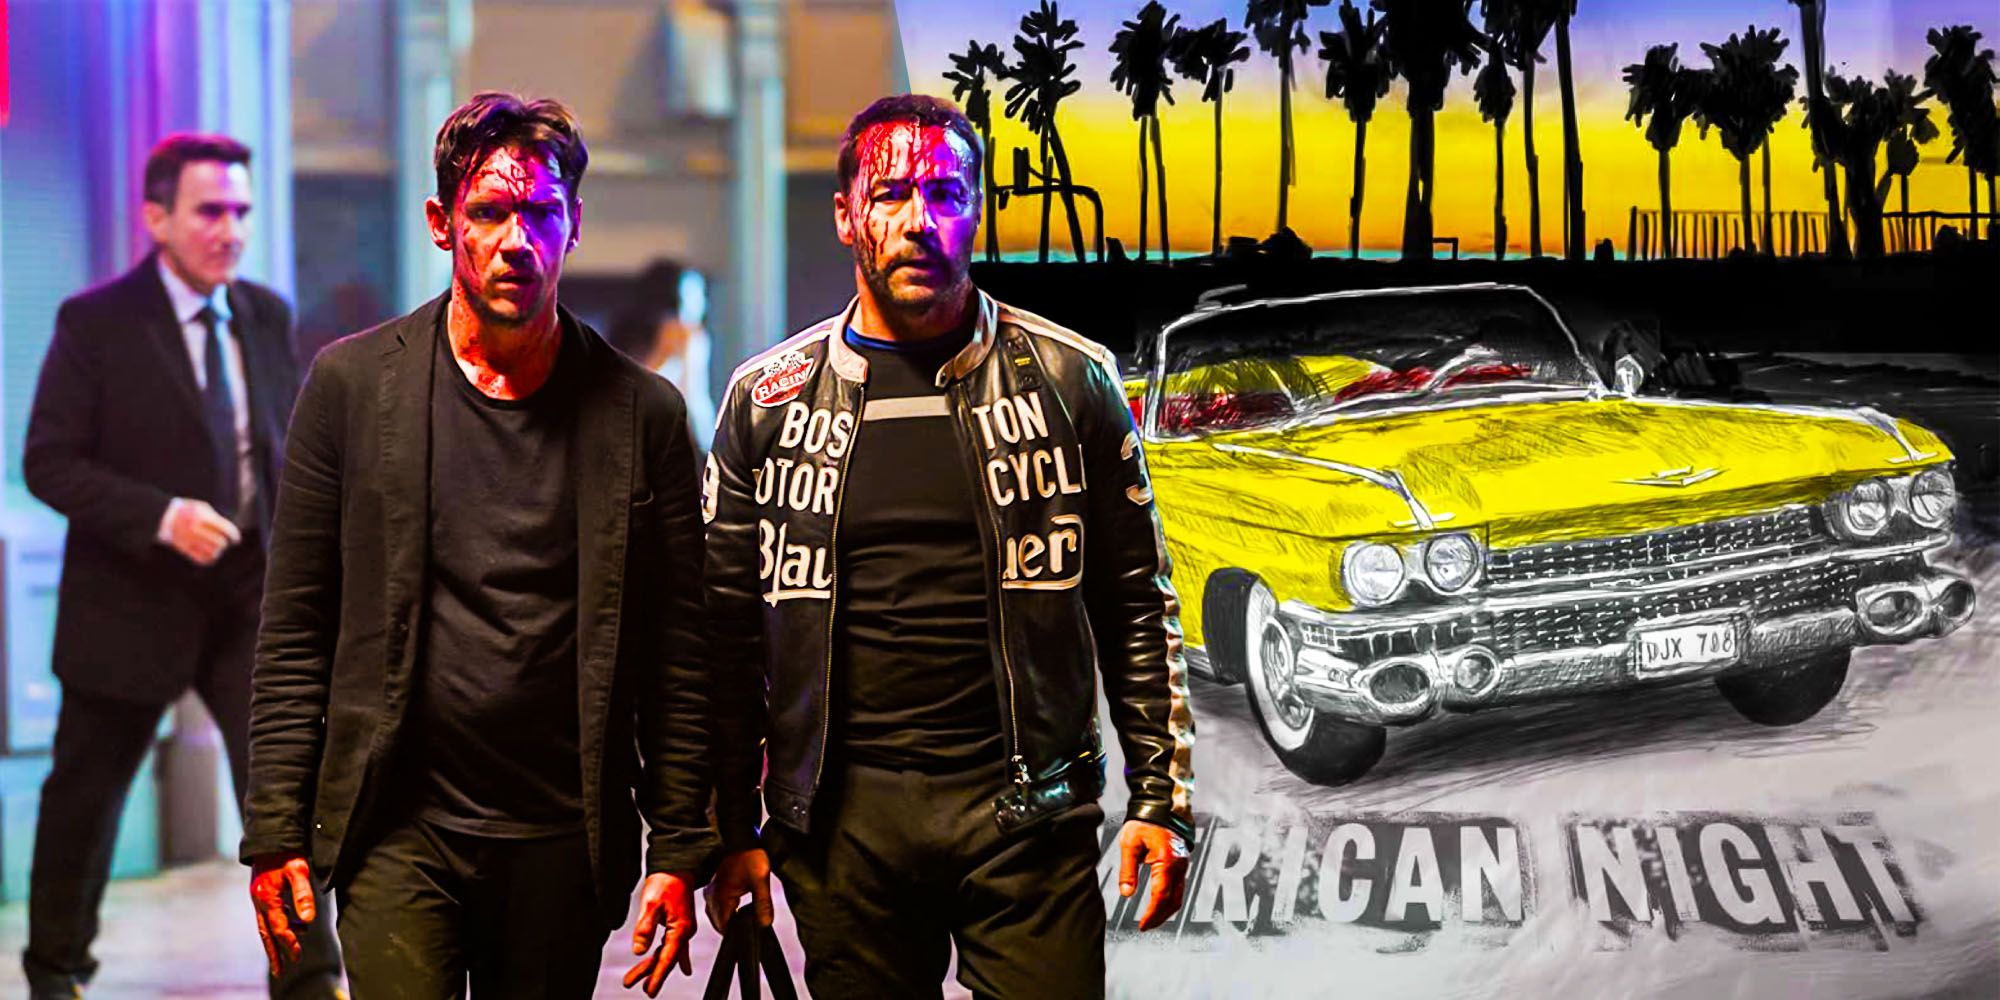 Tráiler de American Night: Jonathan Rhys Meyers protagoniza un thriller artístico [EXCLUSIVE]